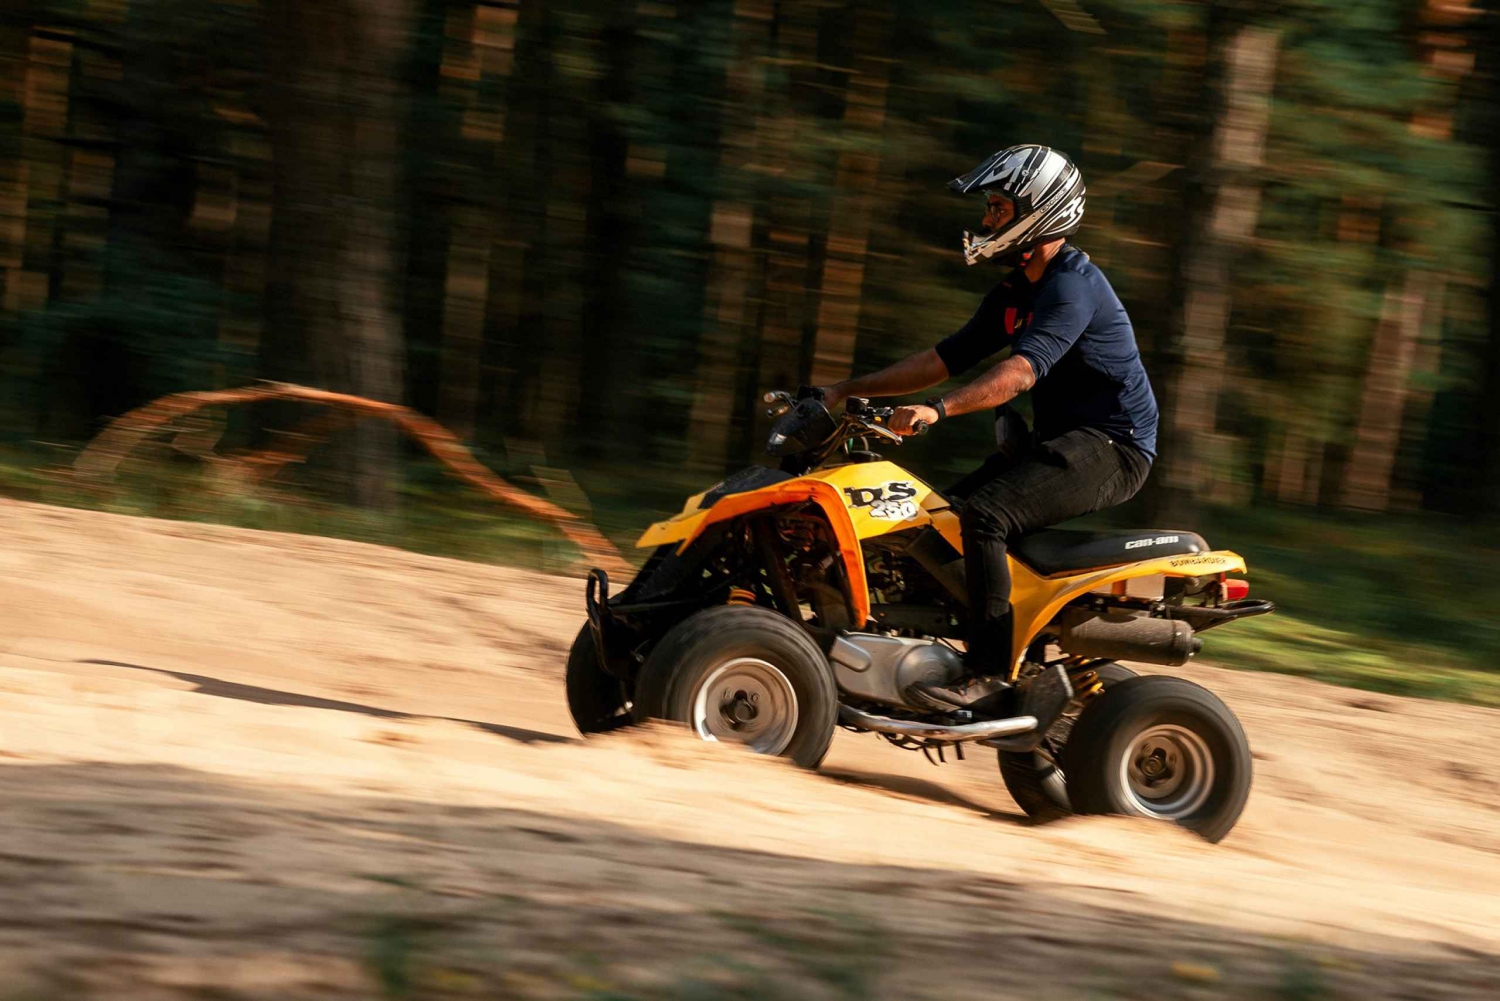 Safari privado en quad/ATV en Riga, Letonia